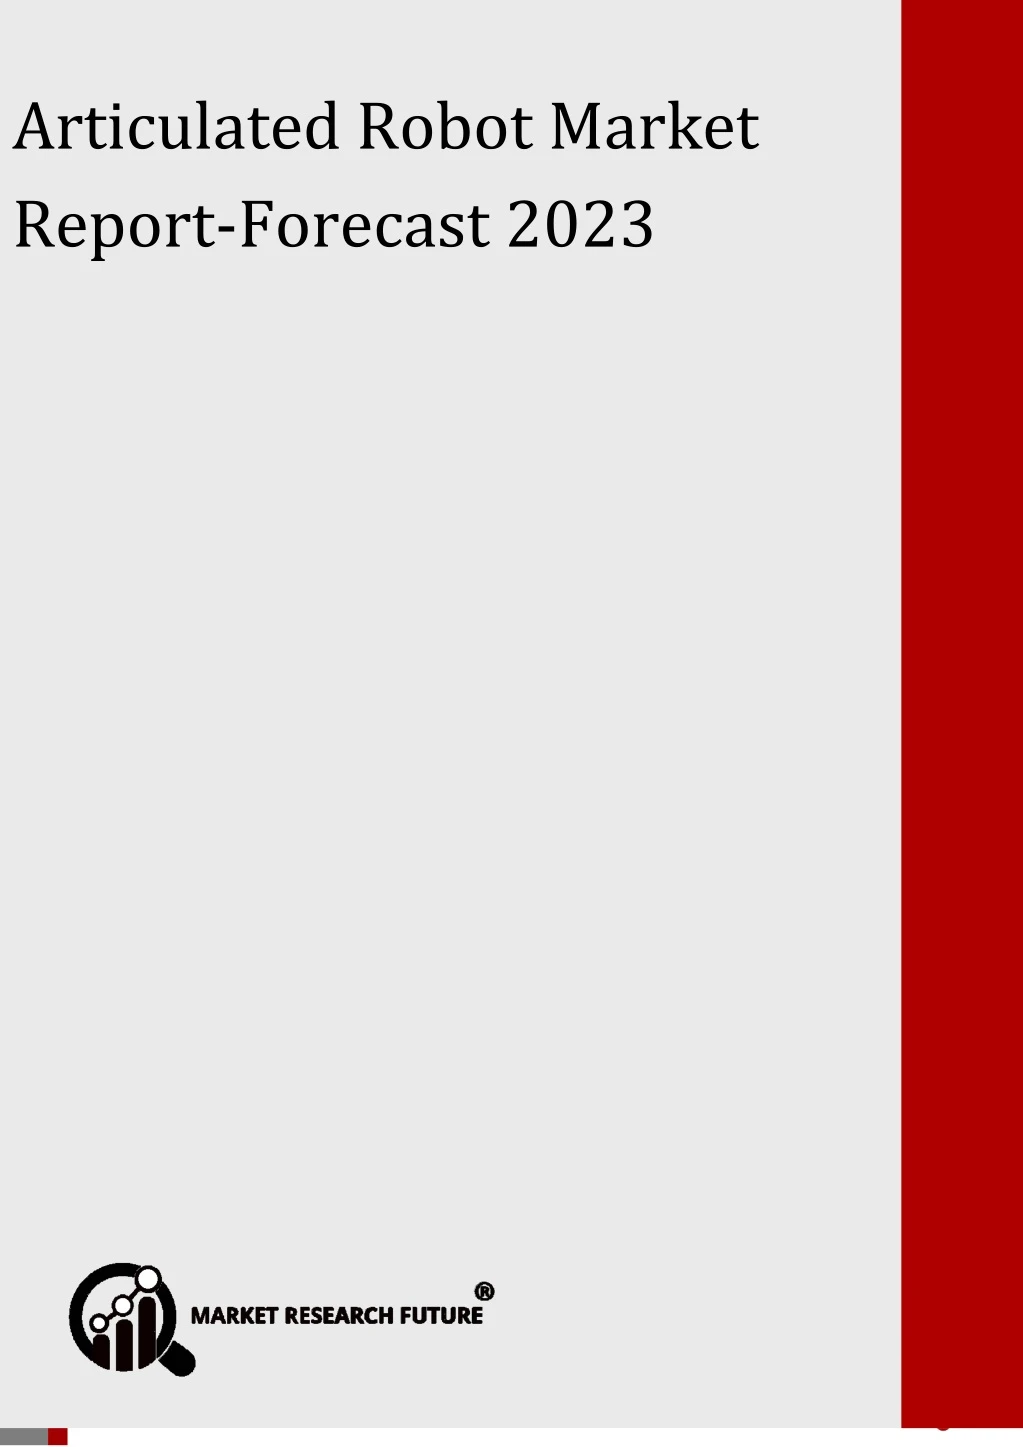 optical sorter market forecast 2023 articulated